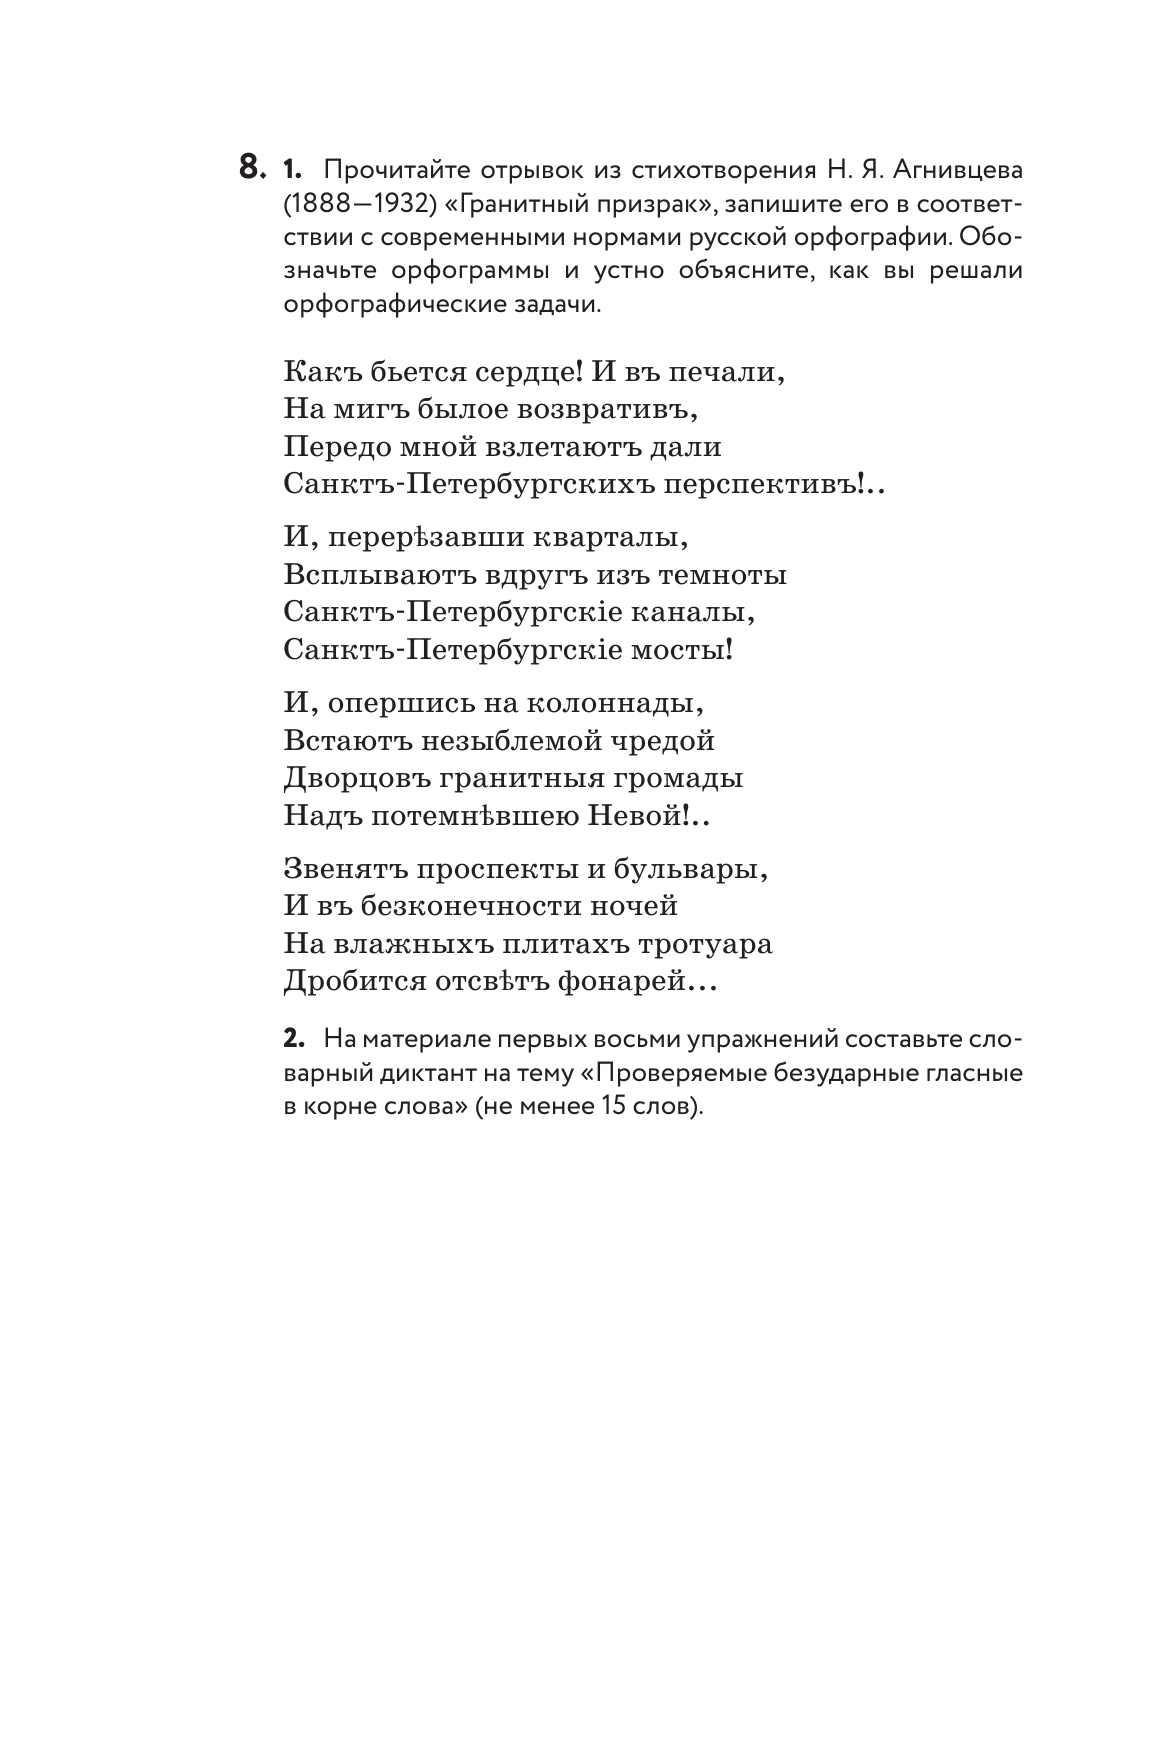 Русский язык. 7 класс. Практика. Учебник 5